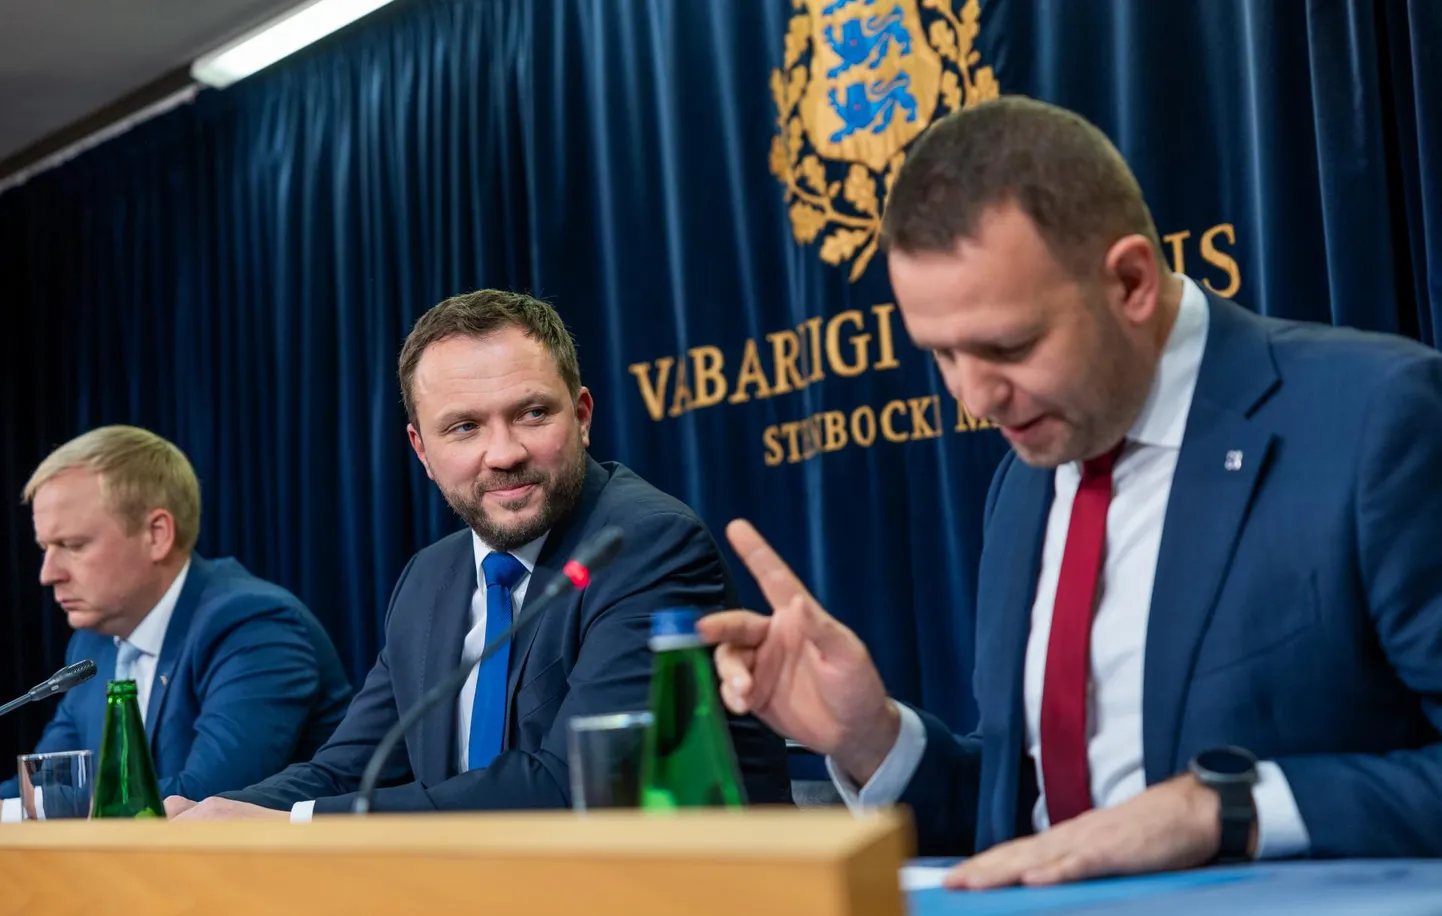 По словам министра внутренних дел Лаури Ляэнеметса (справа), в Эстонии процесс согласования бюджета проходит быстро, значительно быстрее, чем во многих других европейских странах.